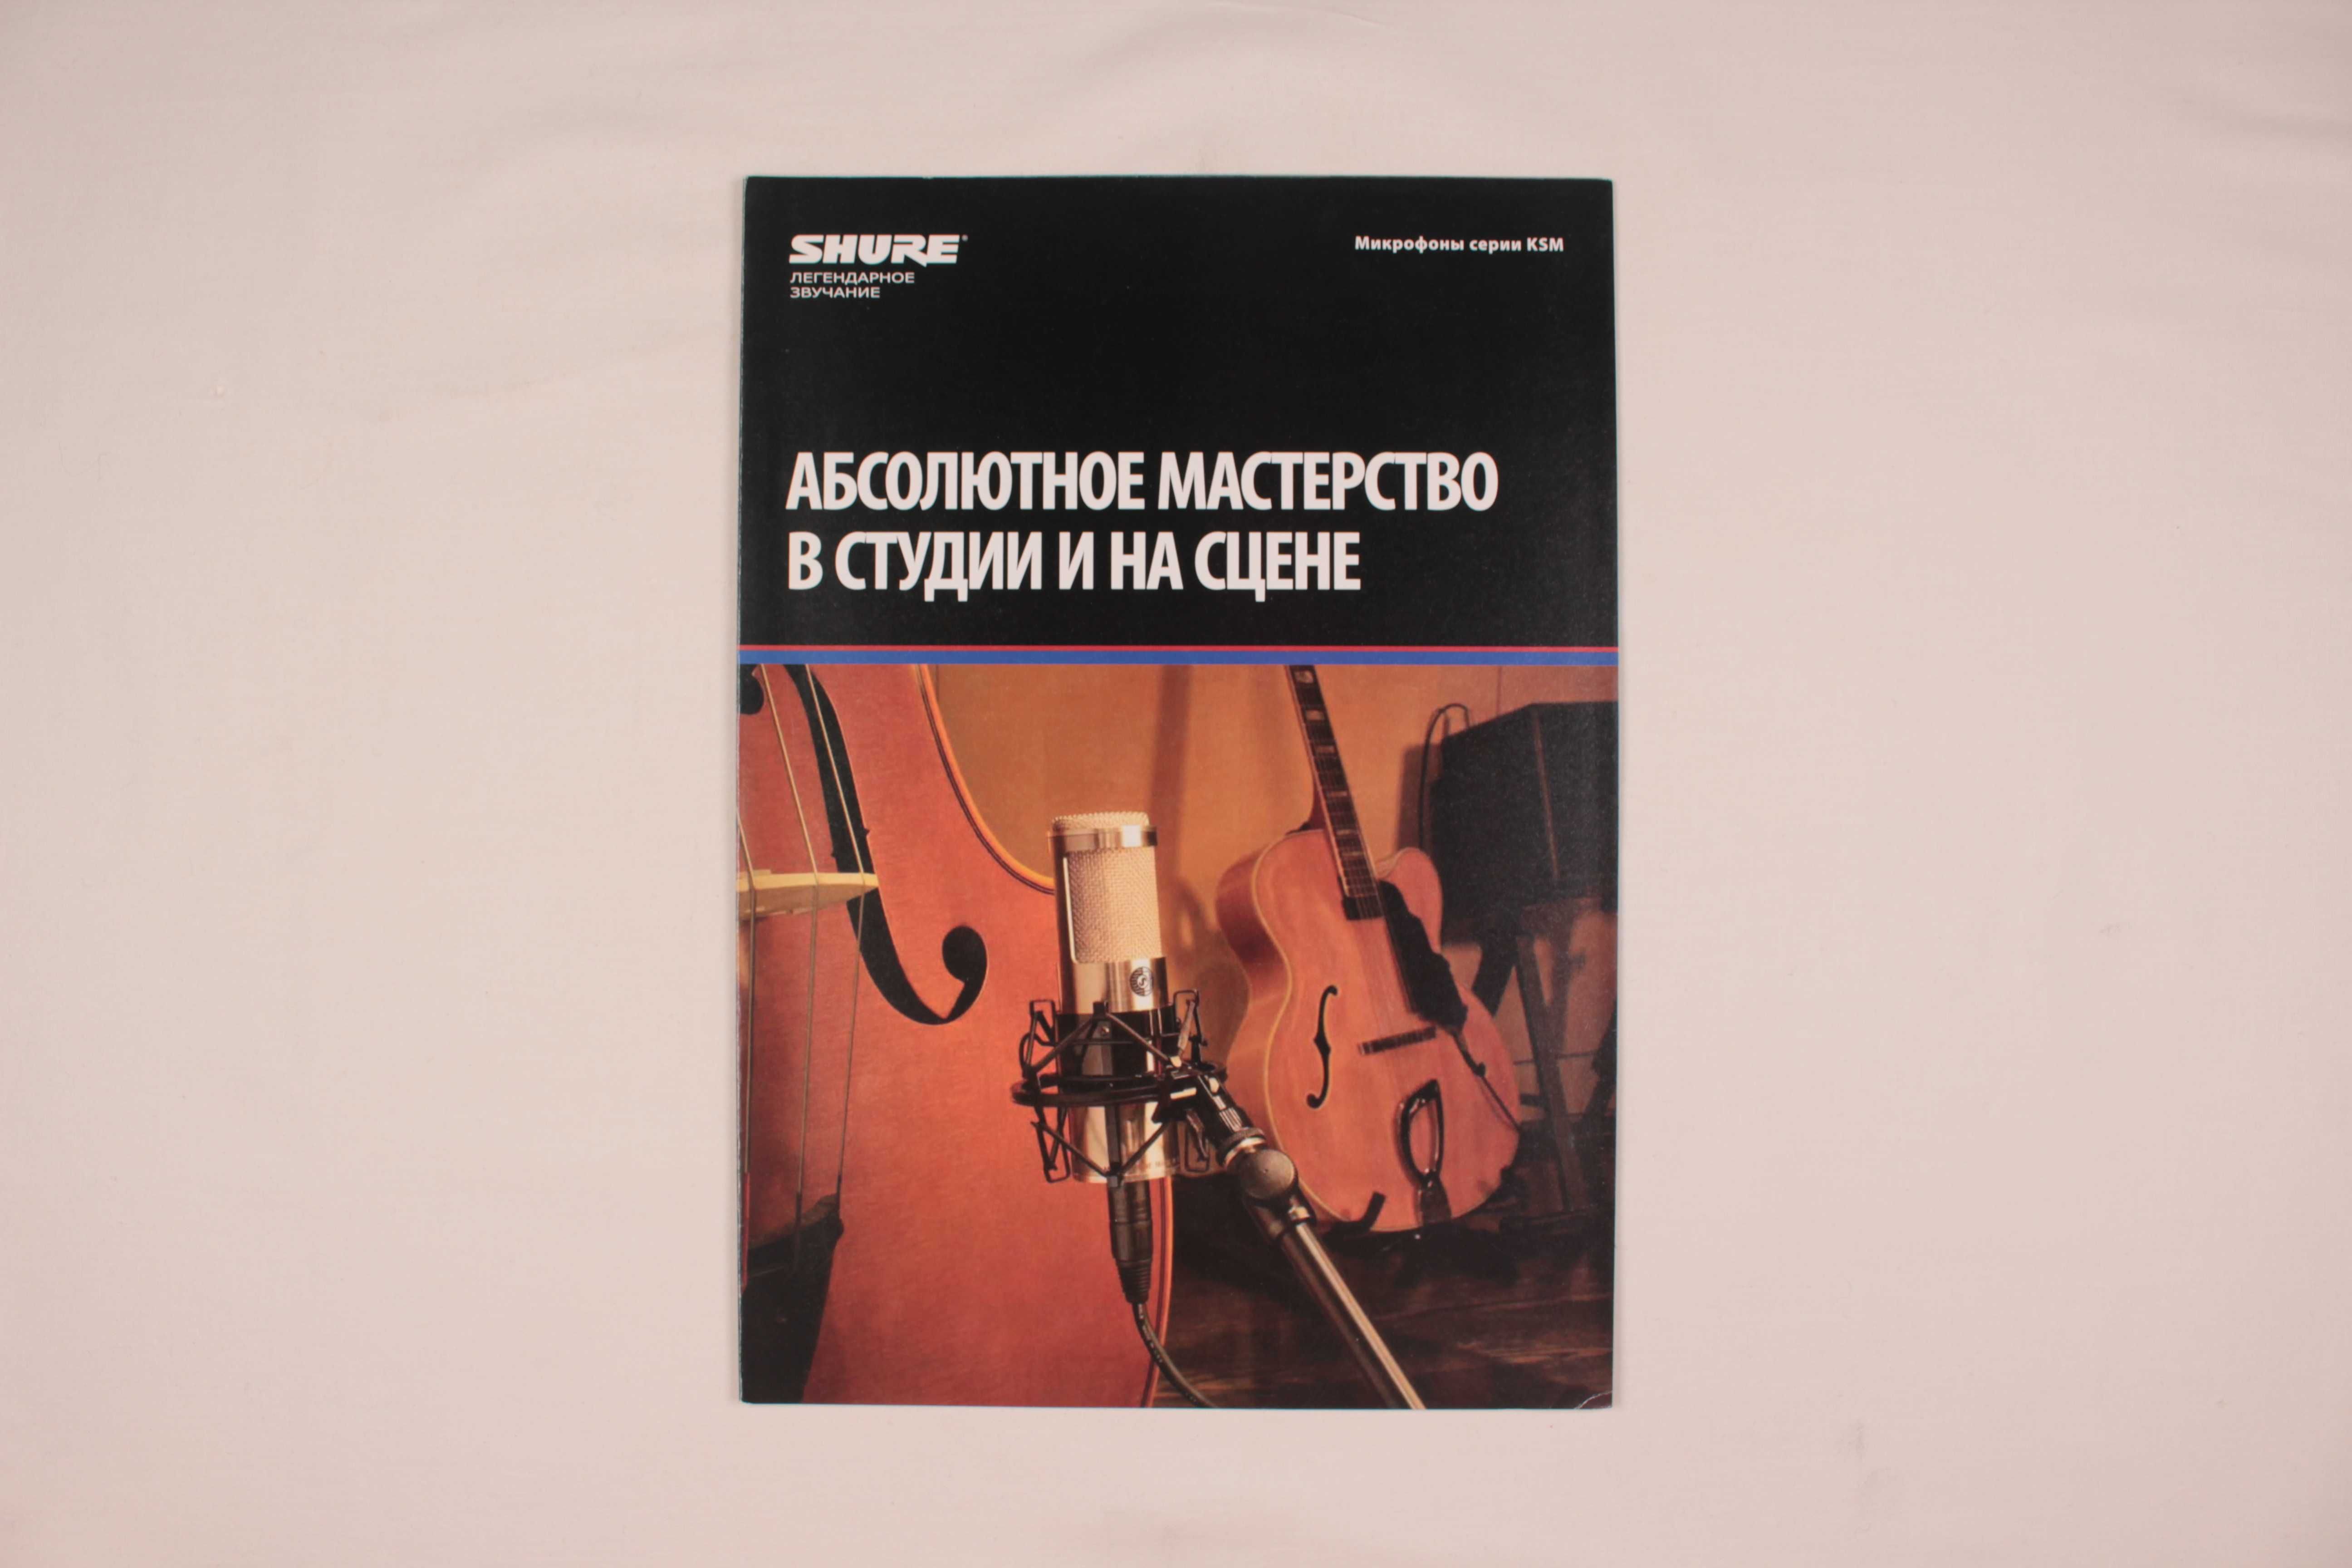 Музыкальный журнал - каталог Shure - микрофоны серии KSM